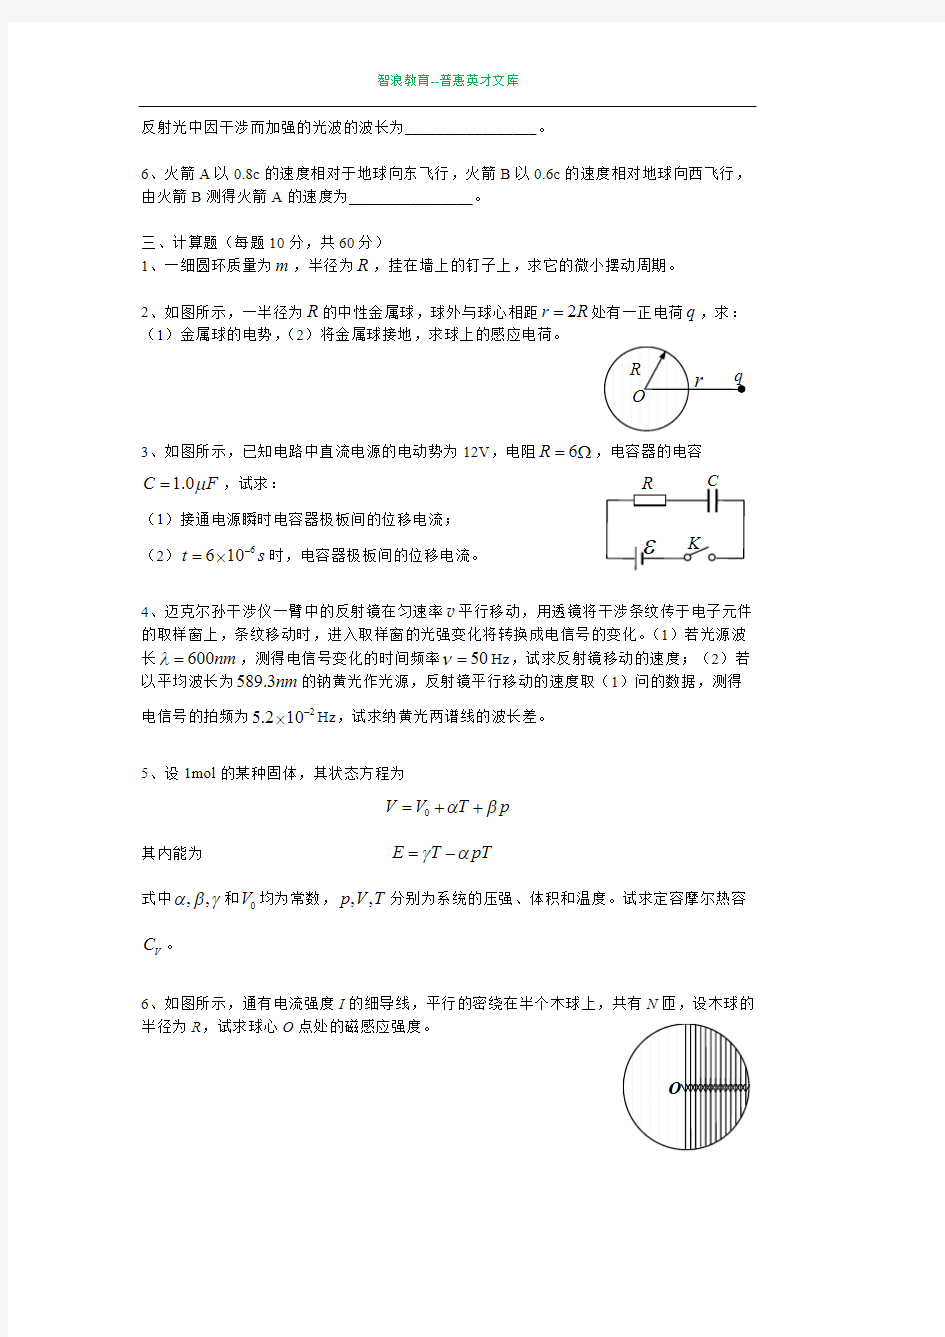 (完整版)湖南大学生物理竞赛试题及答案,推荐文档